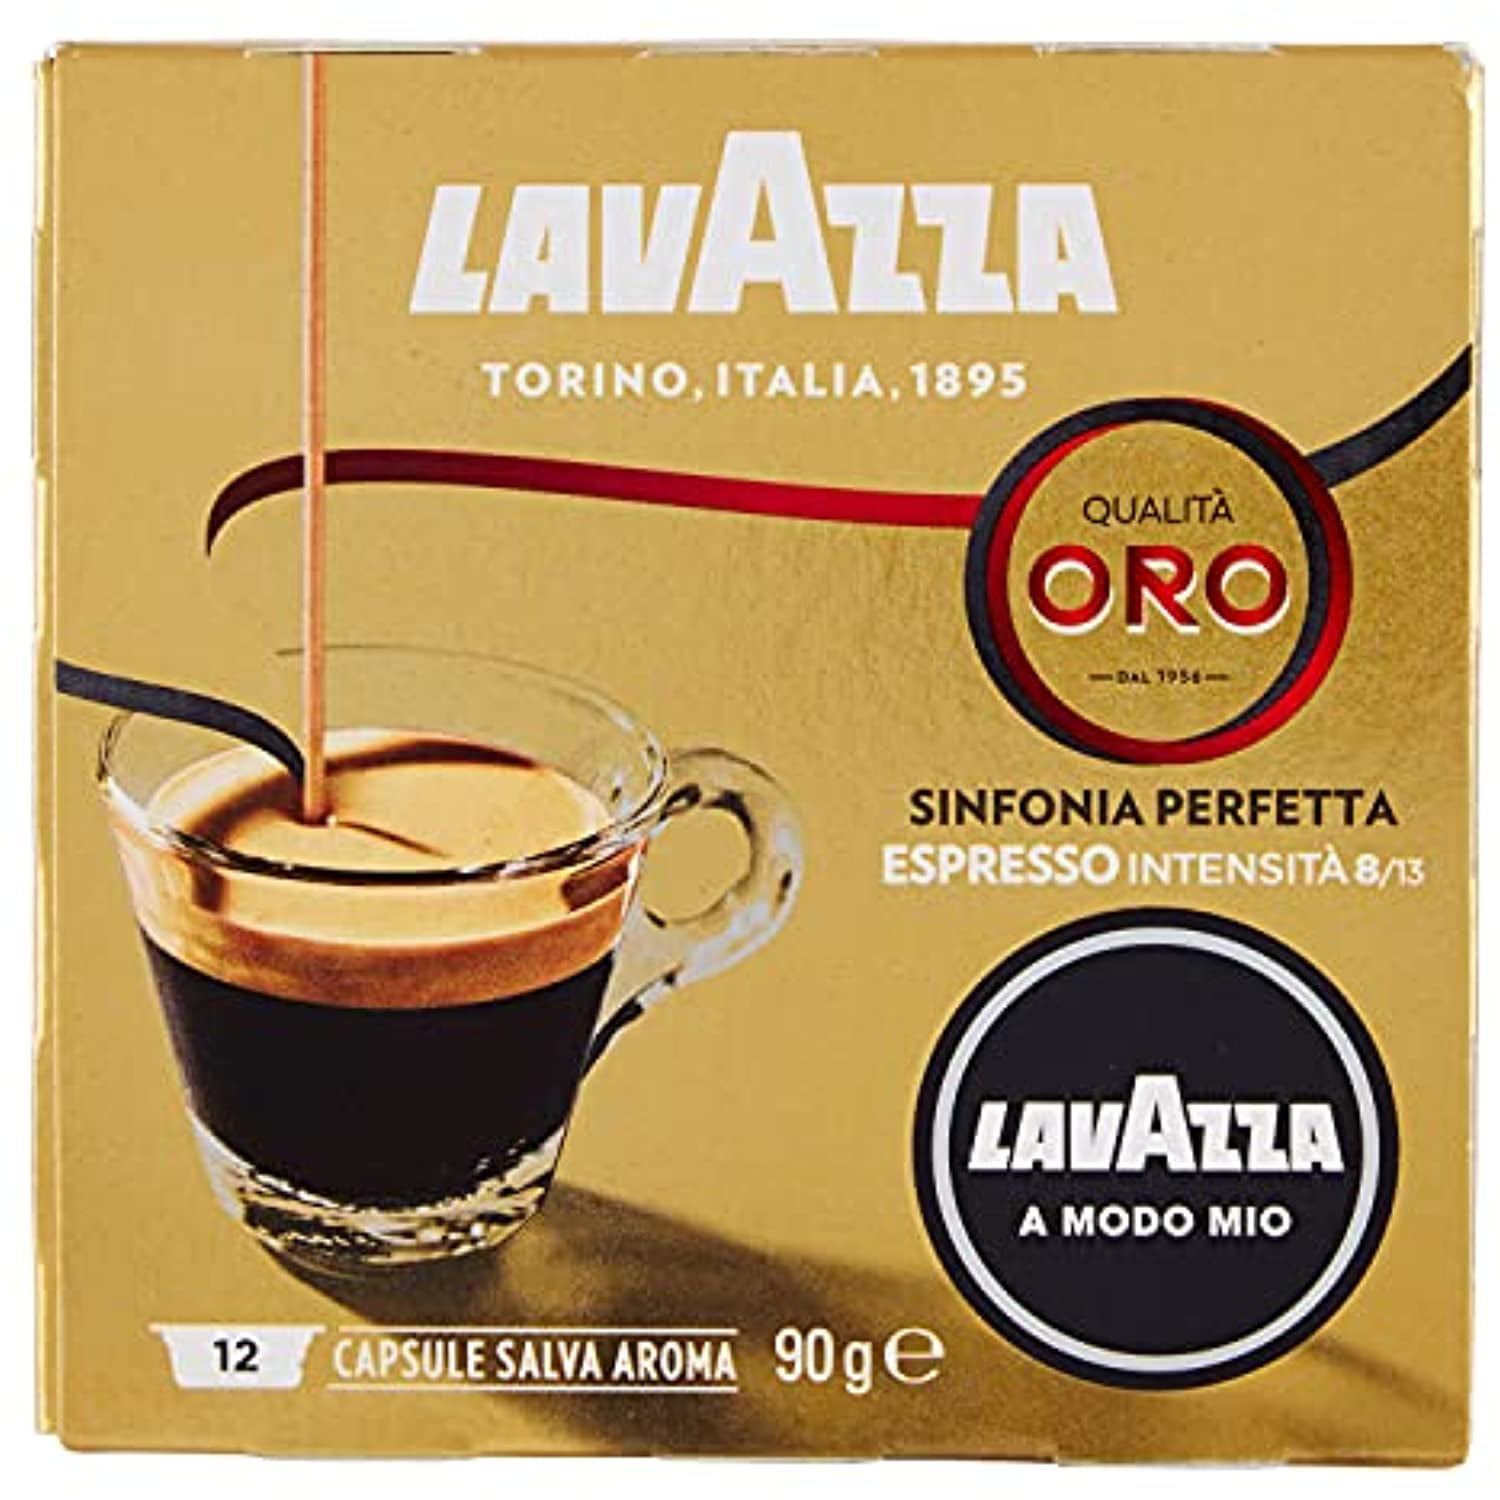 Lavazza Qualita Oro - 16 Capsules pour Lavazza a Modo Mio à 5,09 €